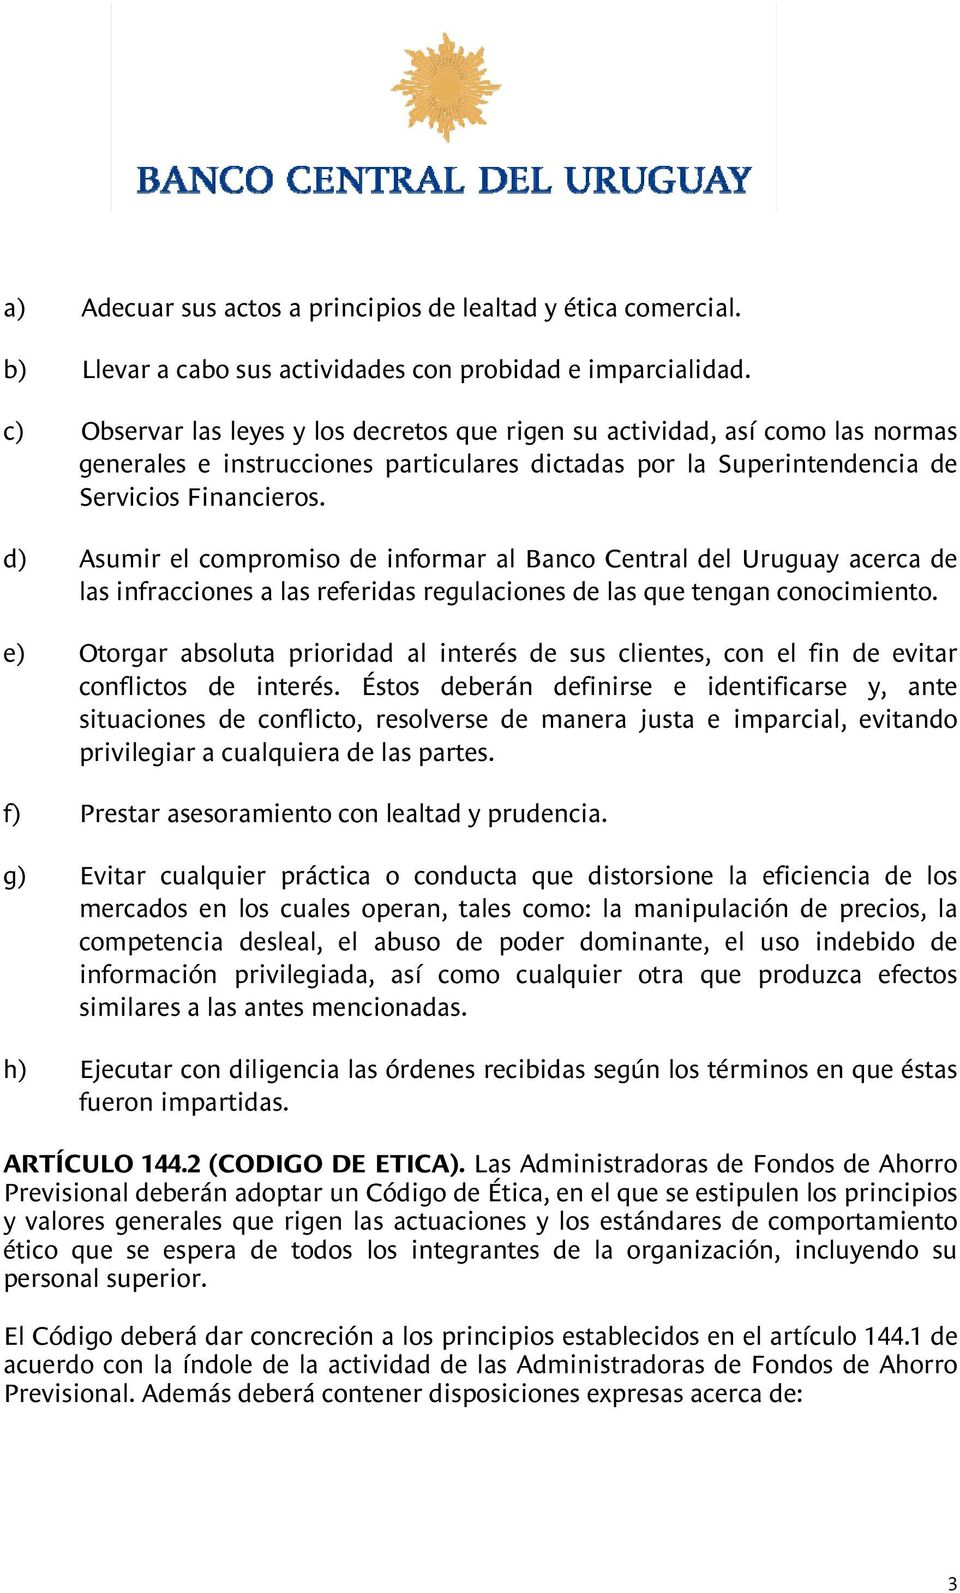 d) Asumir el compromiso de informar al Banco Central del Uruguay acerca de las infracciones a las referidas regulaciones de las que tengan conocimiento.